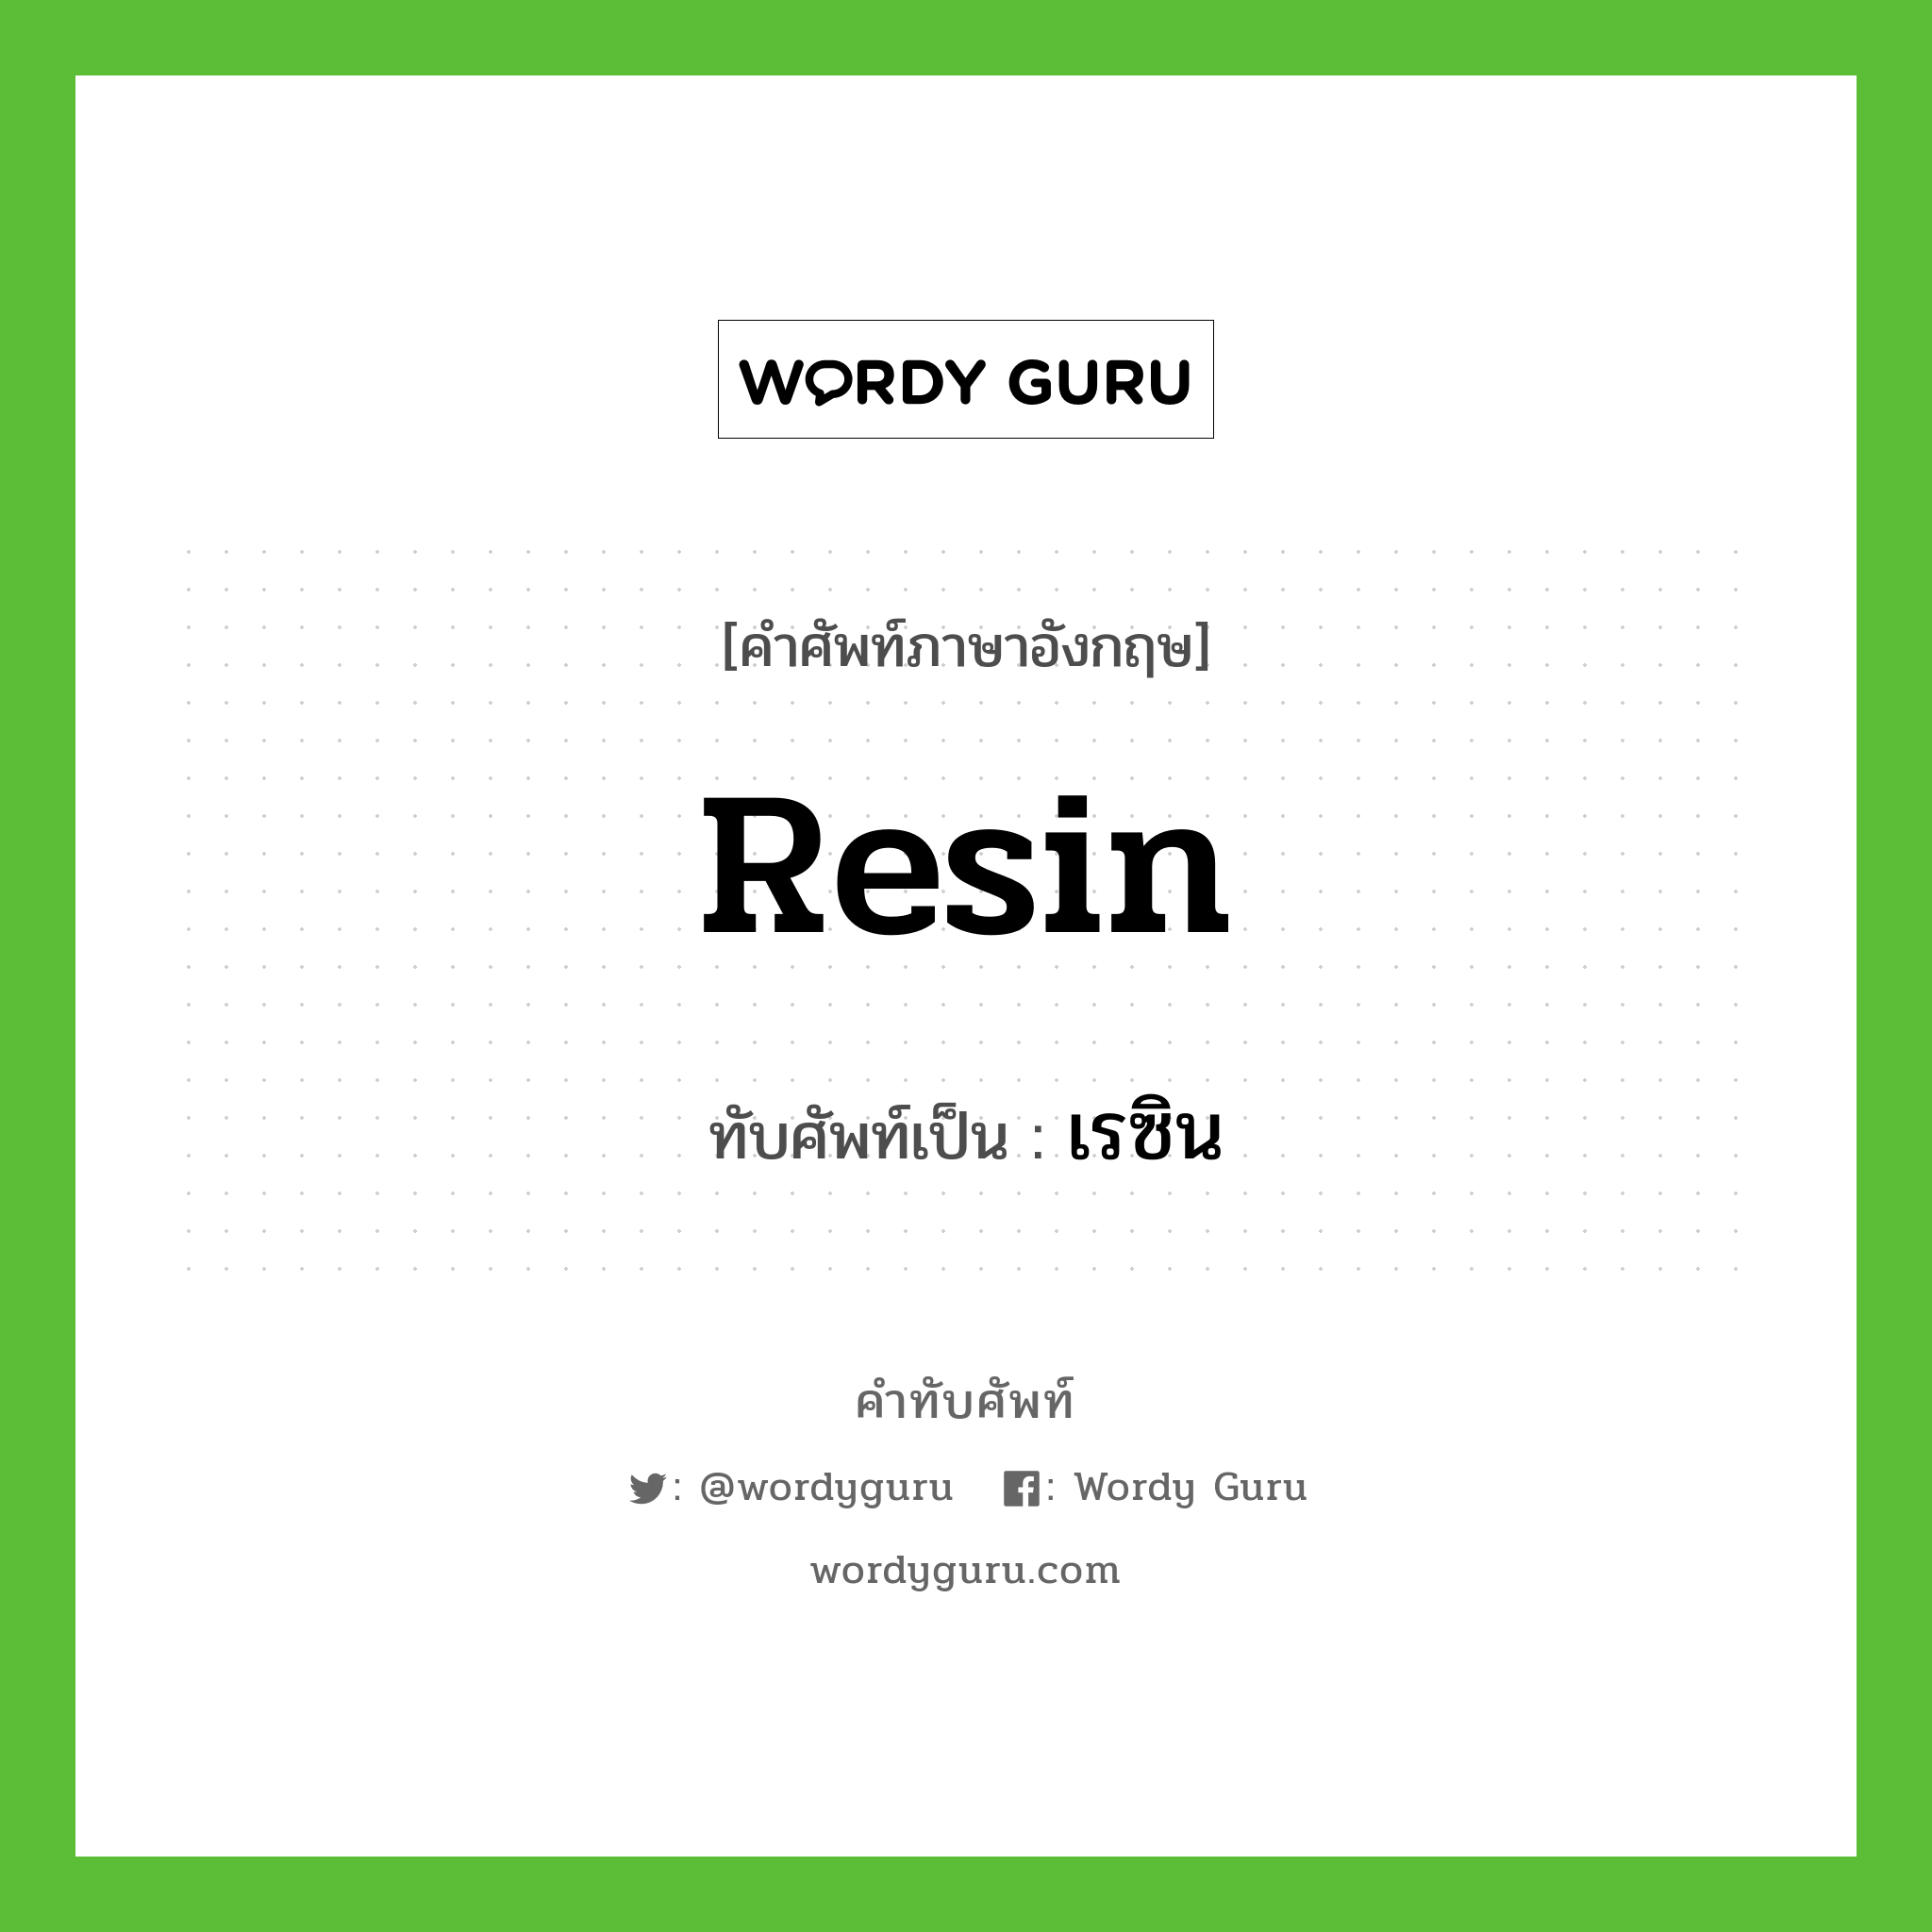 resin เขียนเป็นคำไทยว่าอะไร?, คำศัพท์ภาษาอังกฤษ resin ทับศัพท์เป็น เรซิน